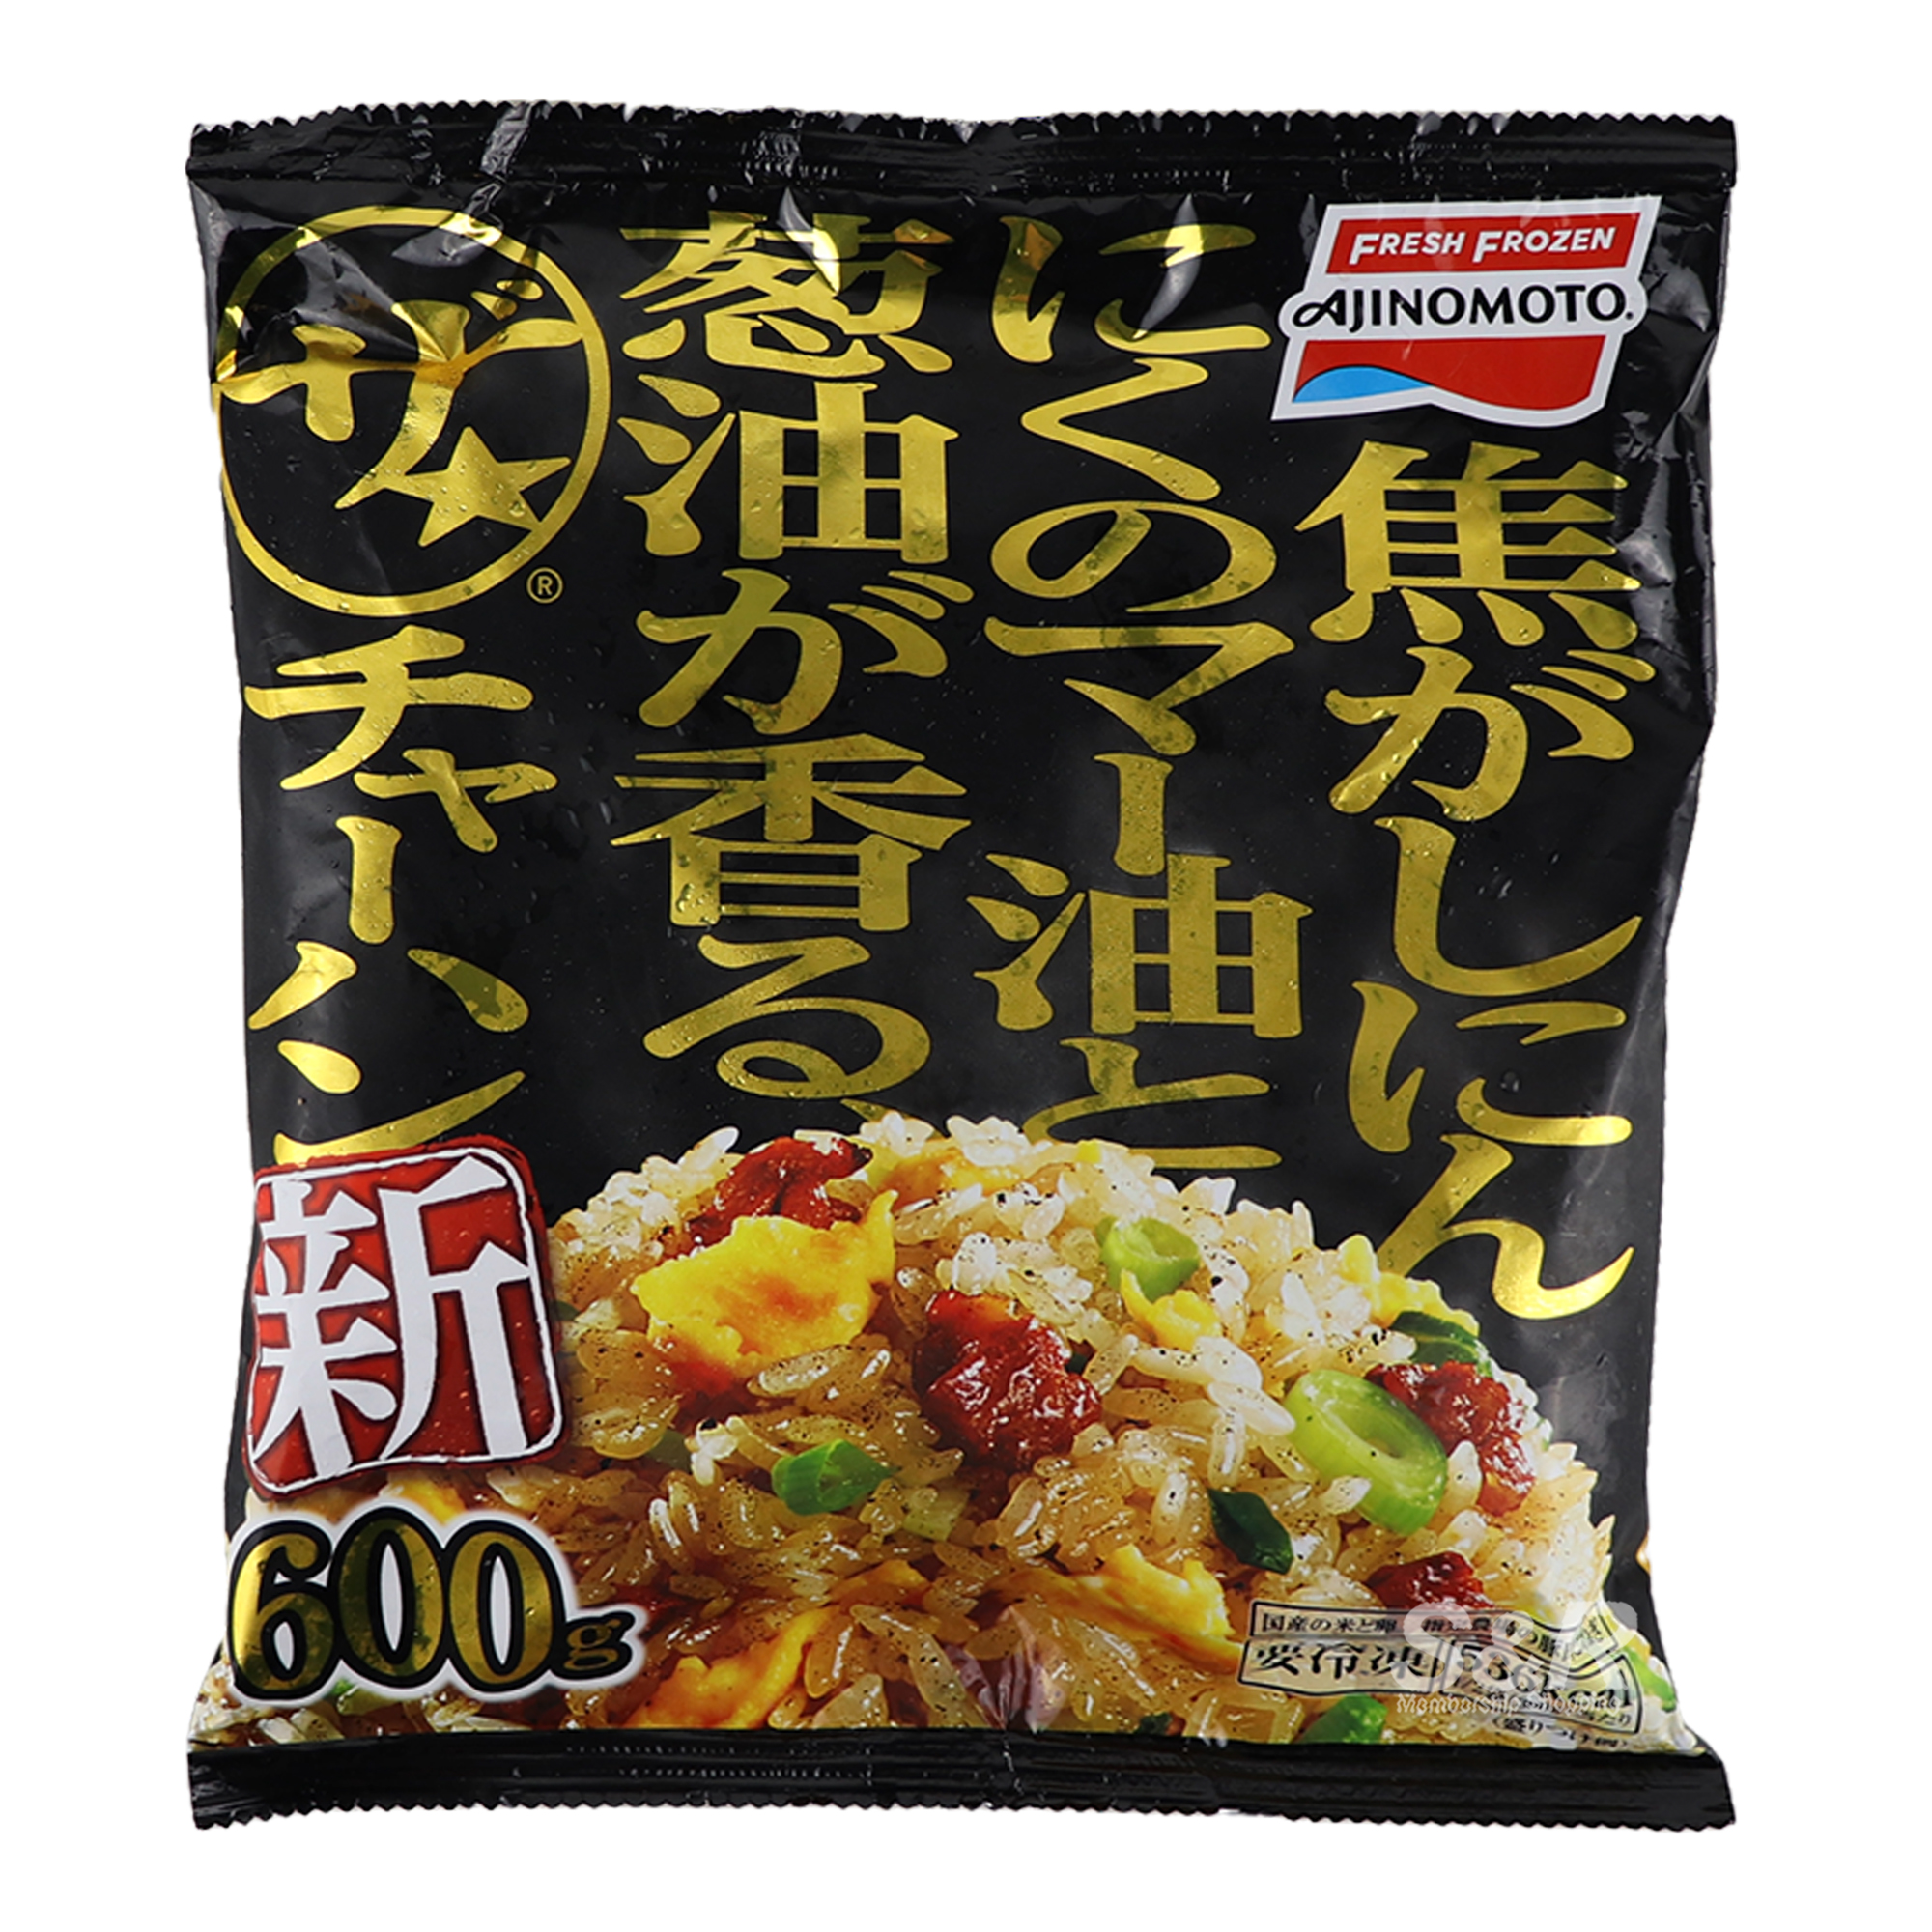 Ajinomoto The Fried Rice 600g